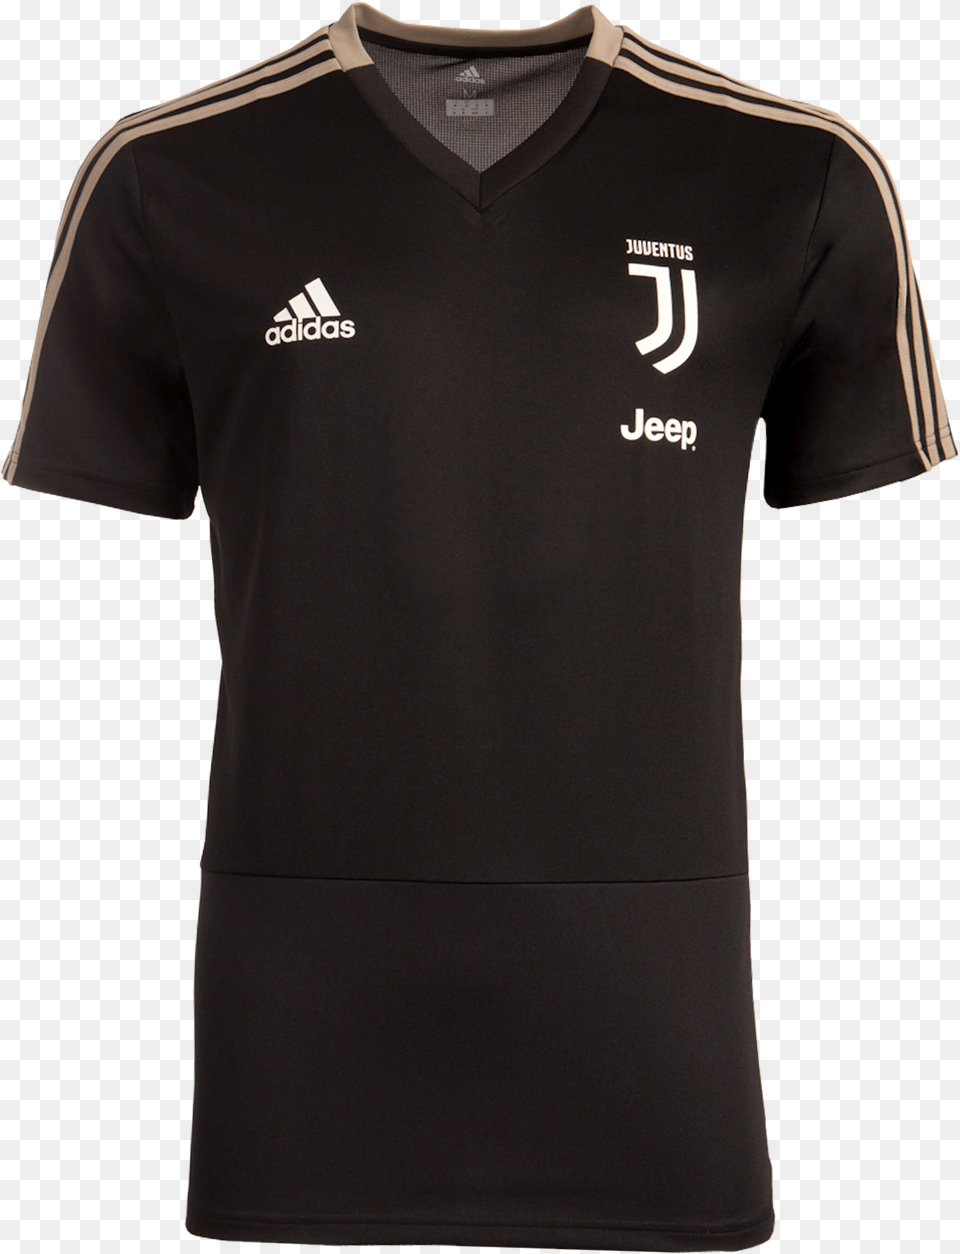 Juventus Training Jersey Nike Spurs T Shirt, Clothing, T-shirt Png Image